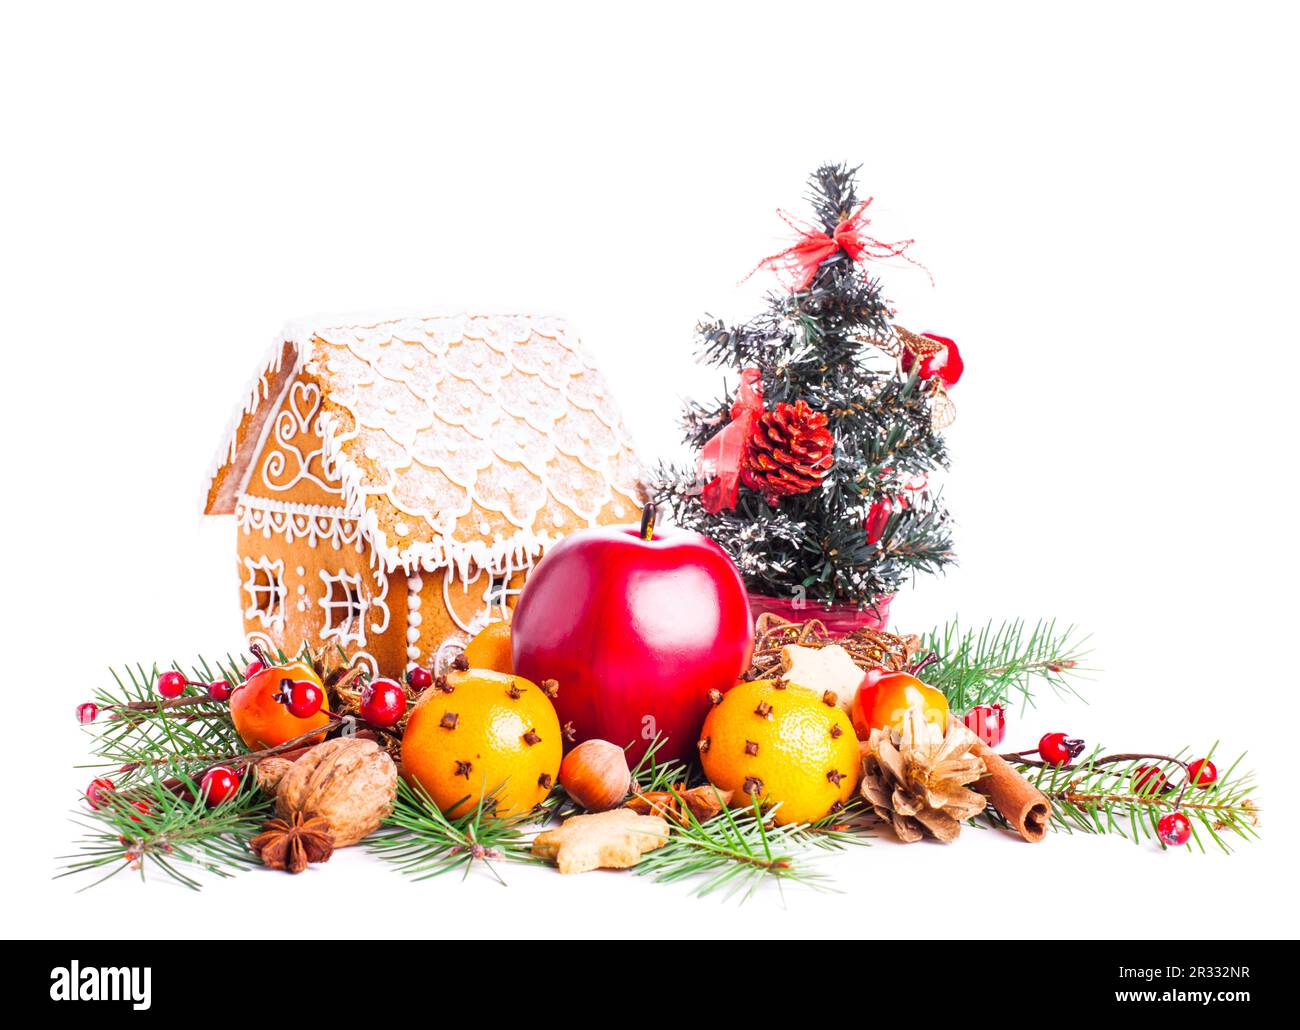 D'épices maison avec des décorations de Noël sur un backgrond blanc Banque D'Images